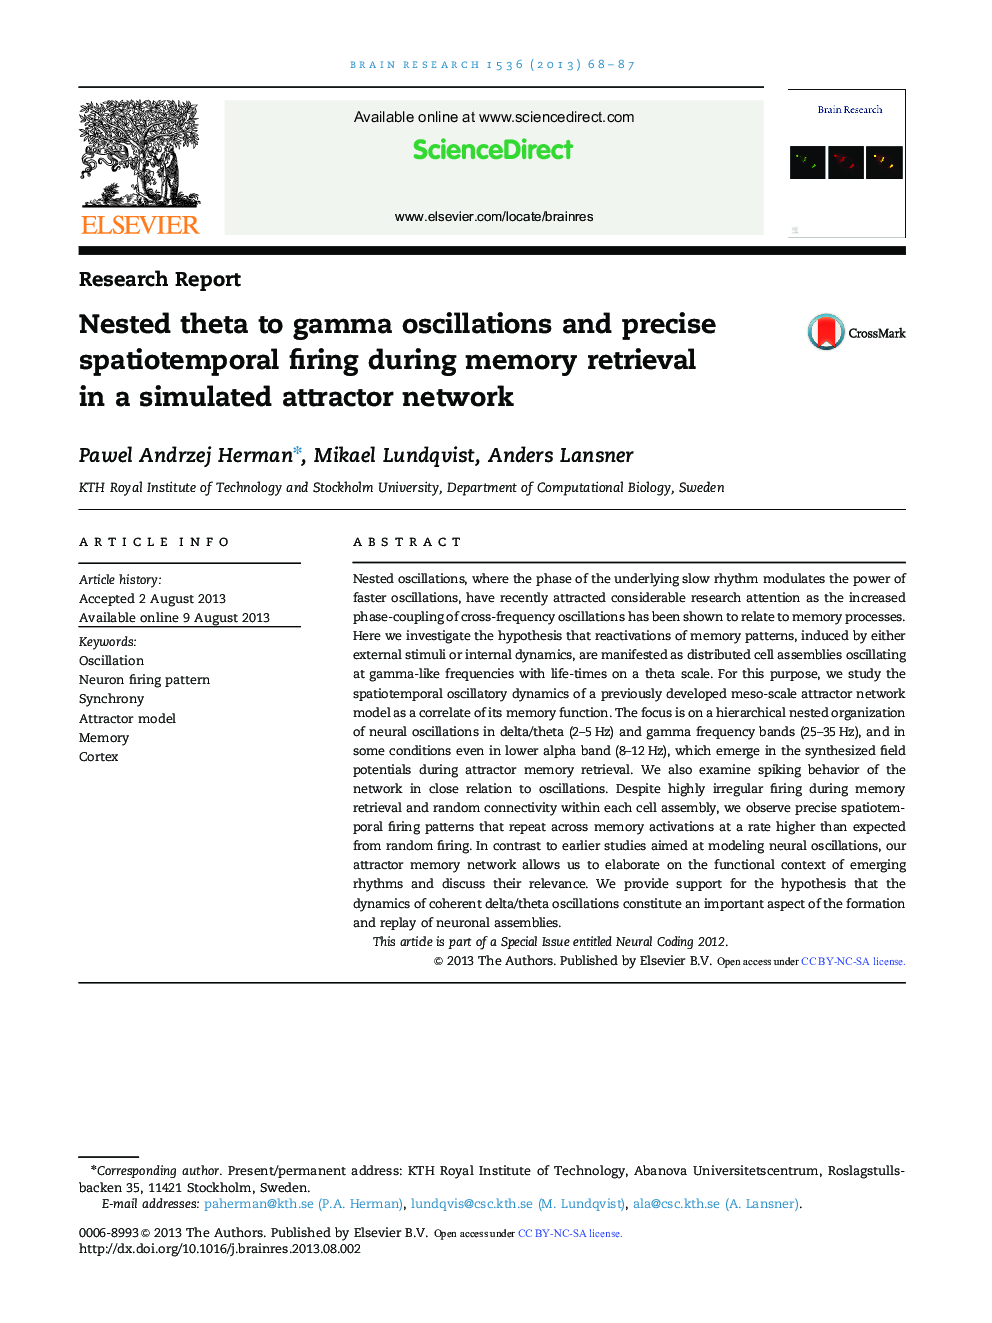 تحقیقات گزارش شده نباید تتا را به نوسانات گاما و شیب فضایی زمانی در هنگام بازیابی حافظه در یک شبکه جذب شبیه سازی 